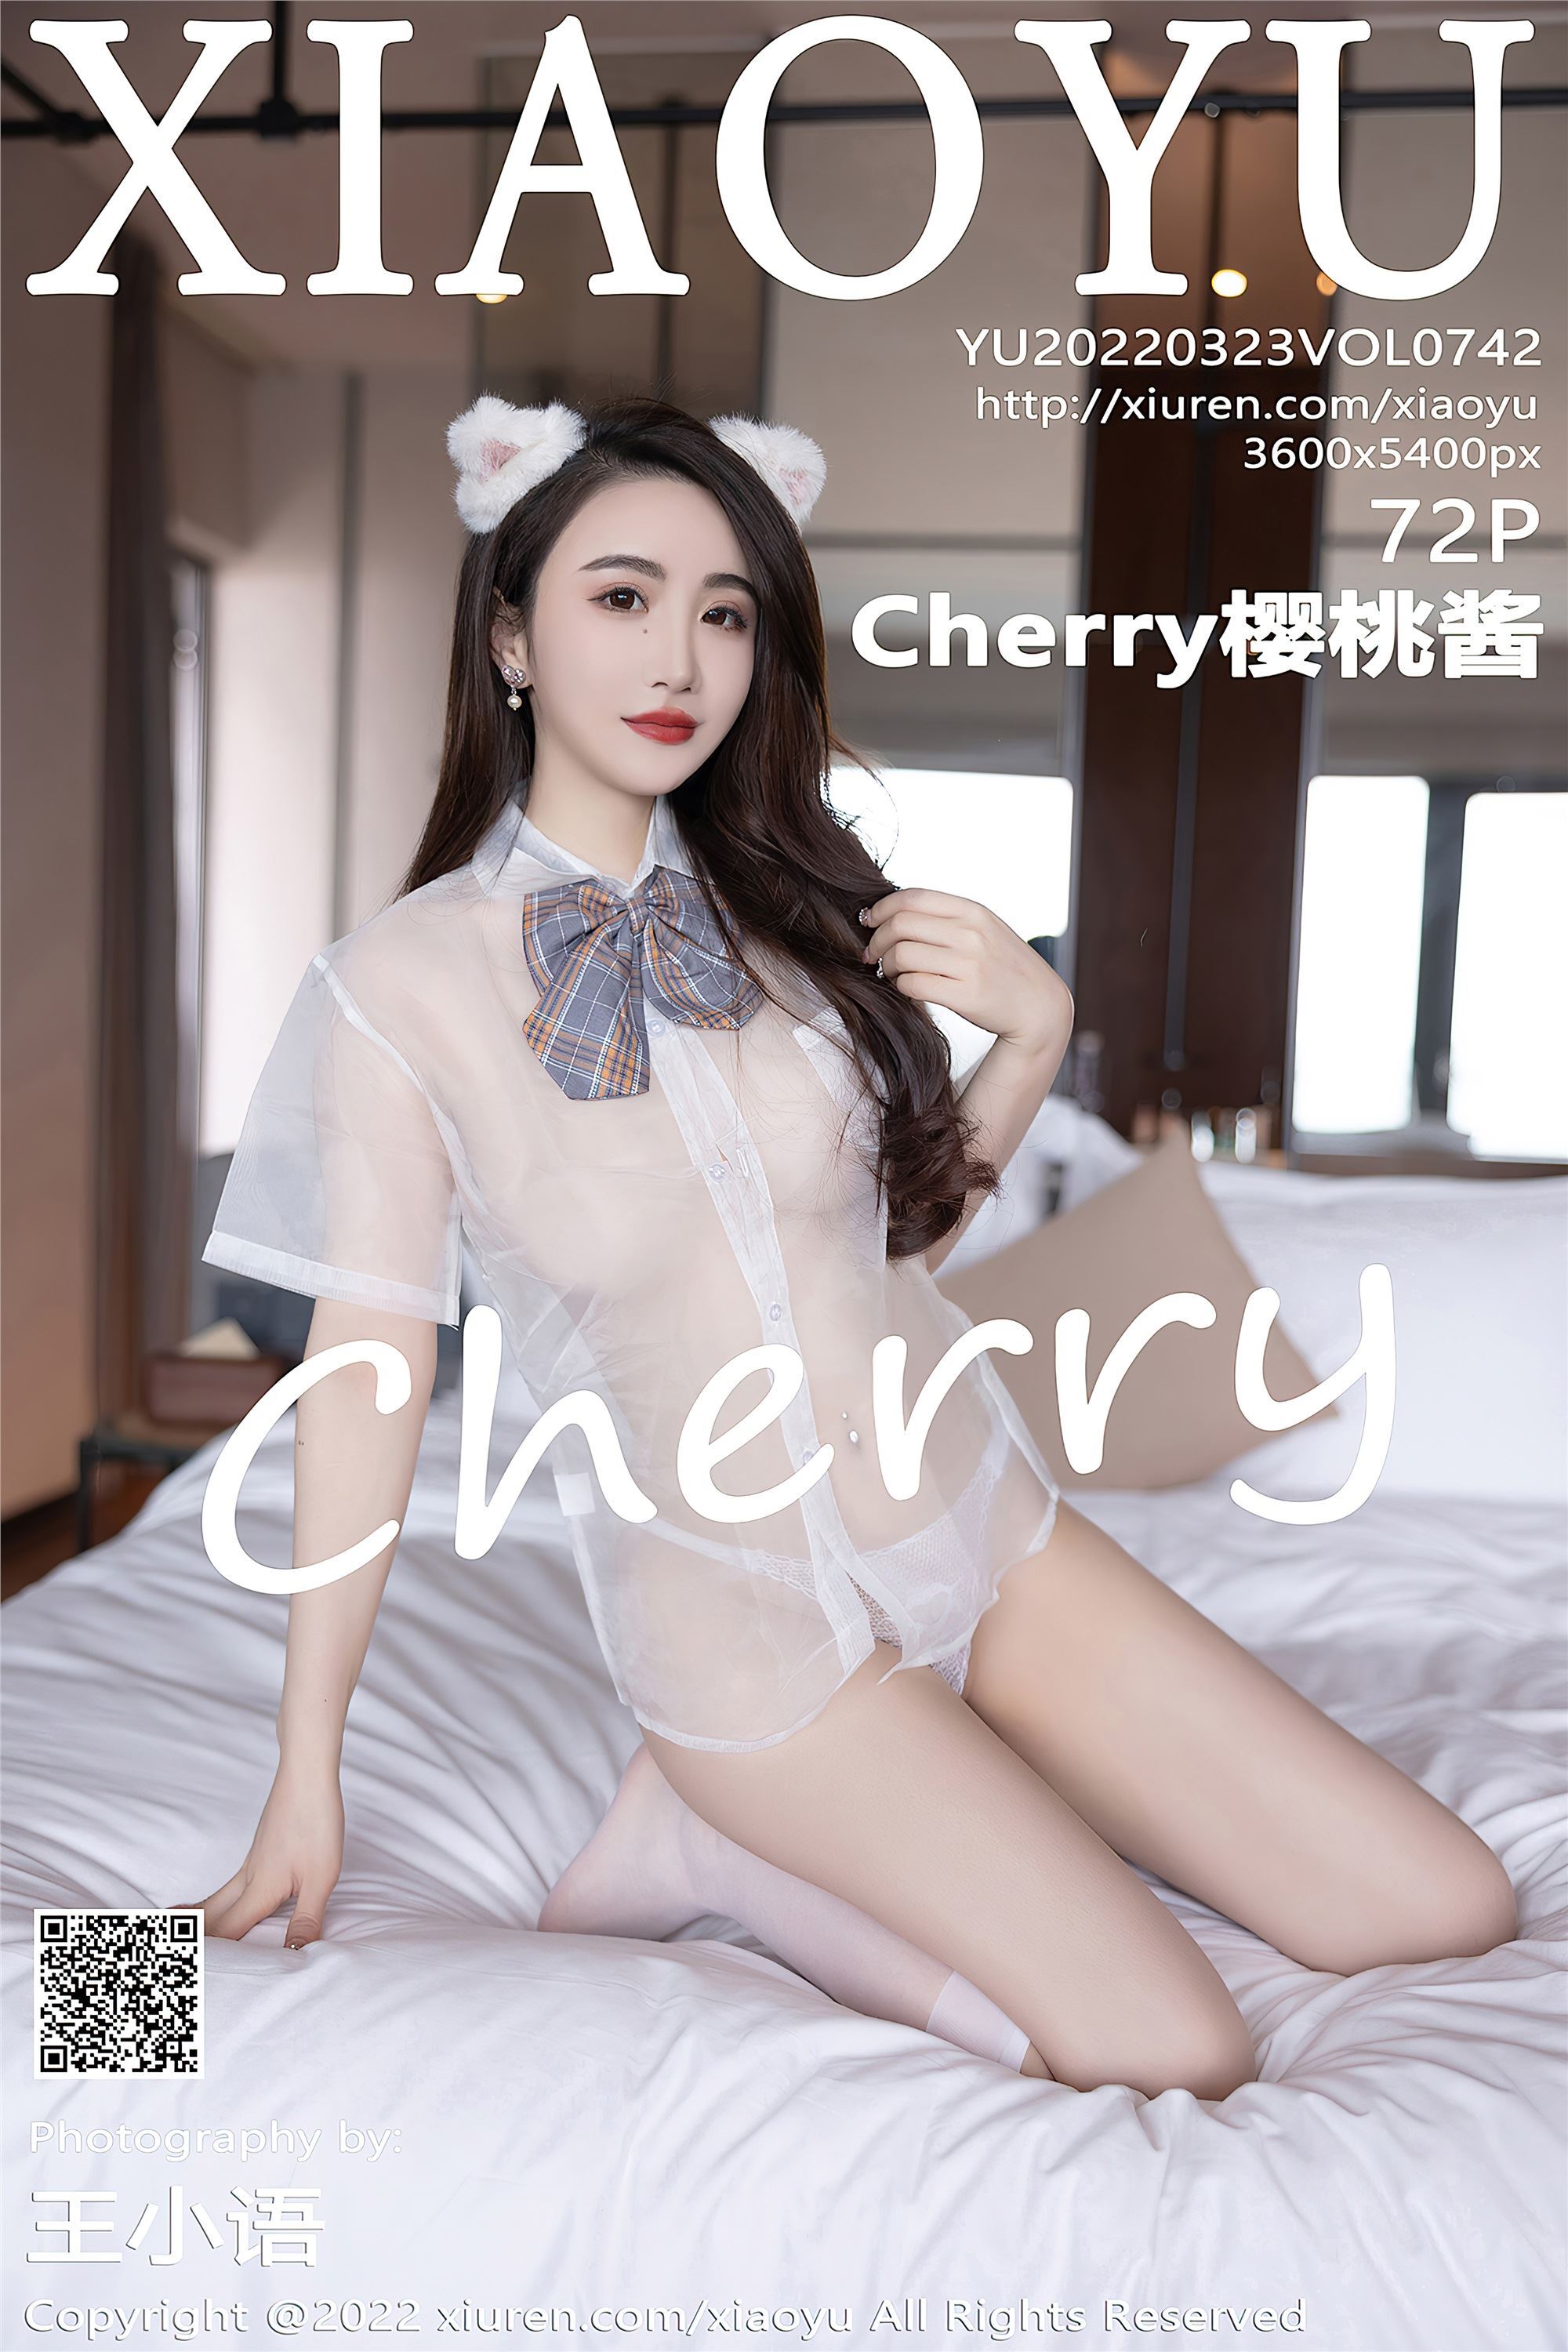 XIAOYU语画界 2022.03.23 Vol.742 Cherry樱桃酱